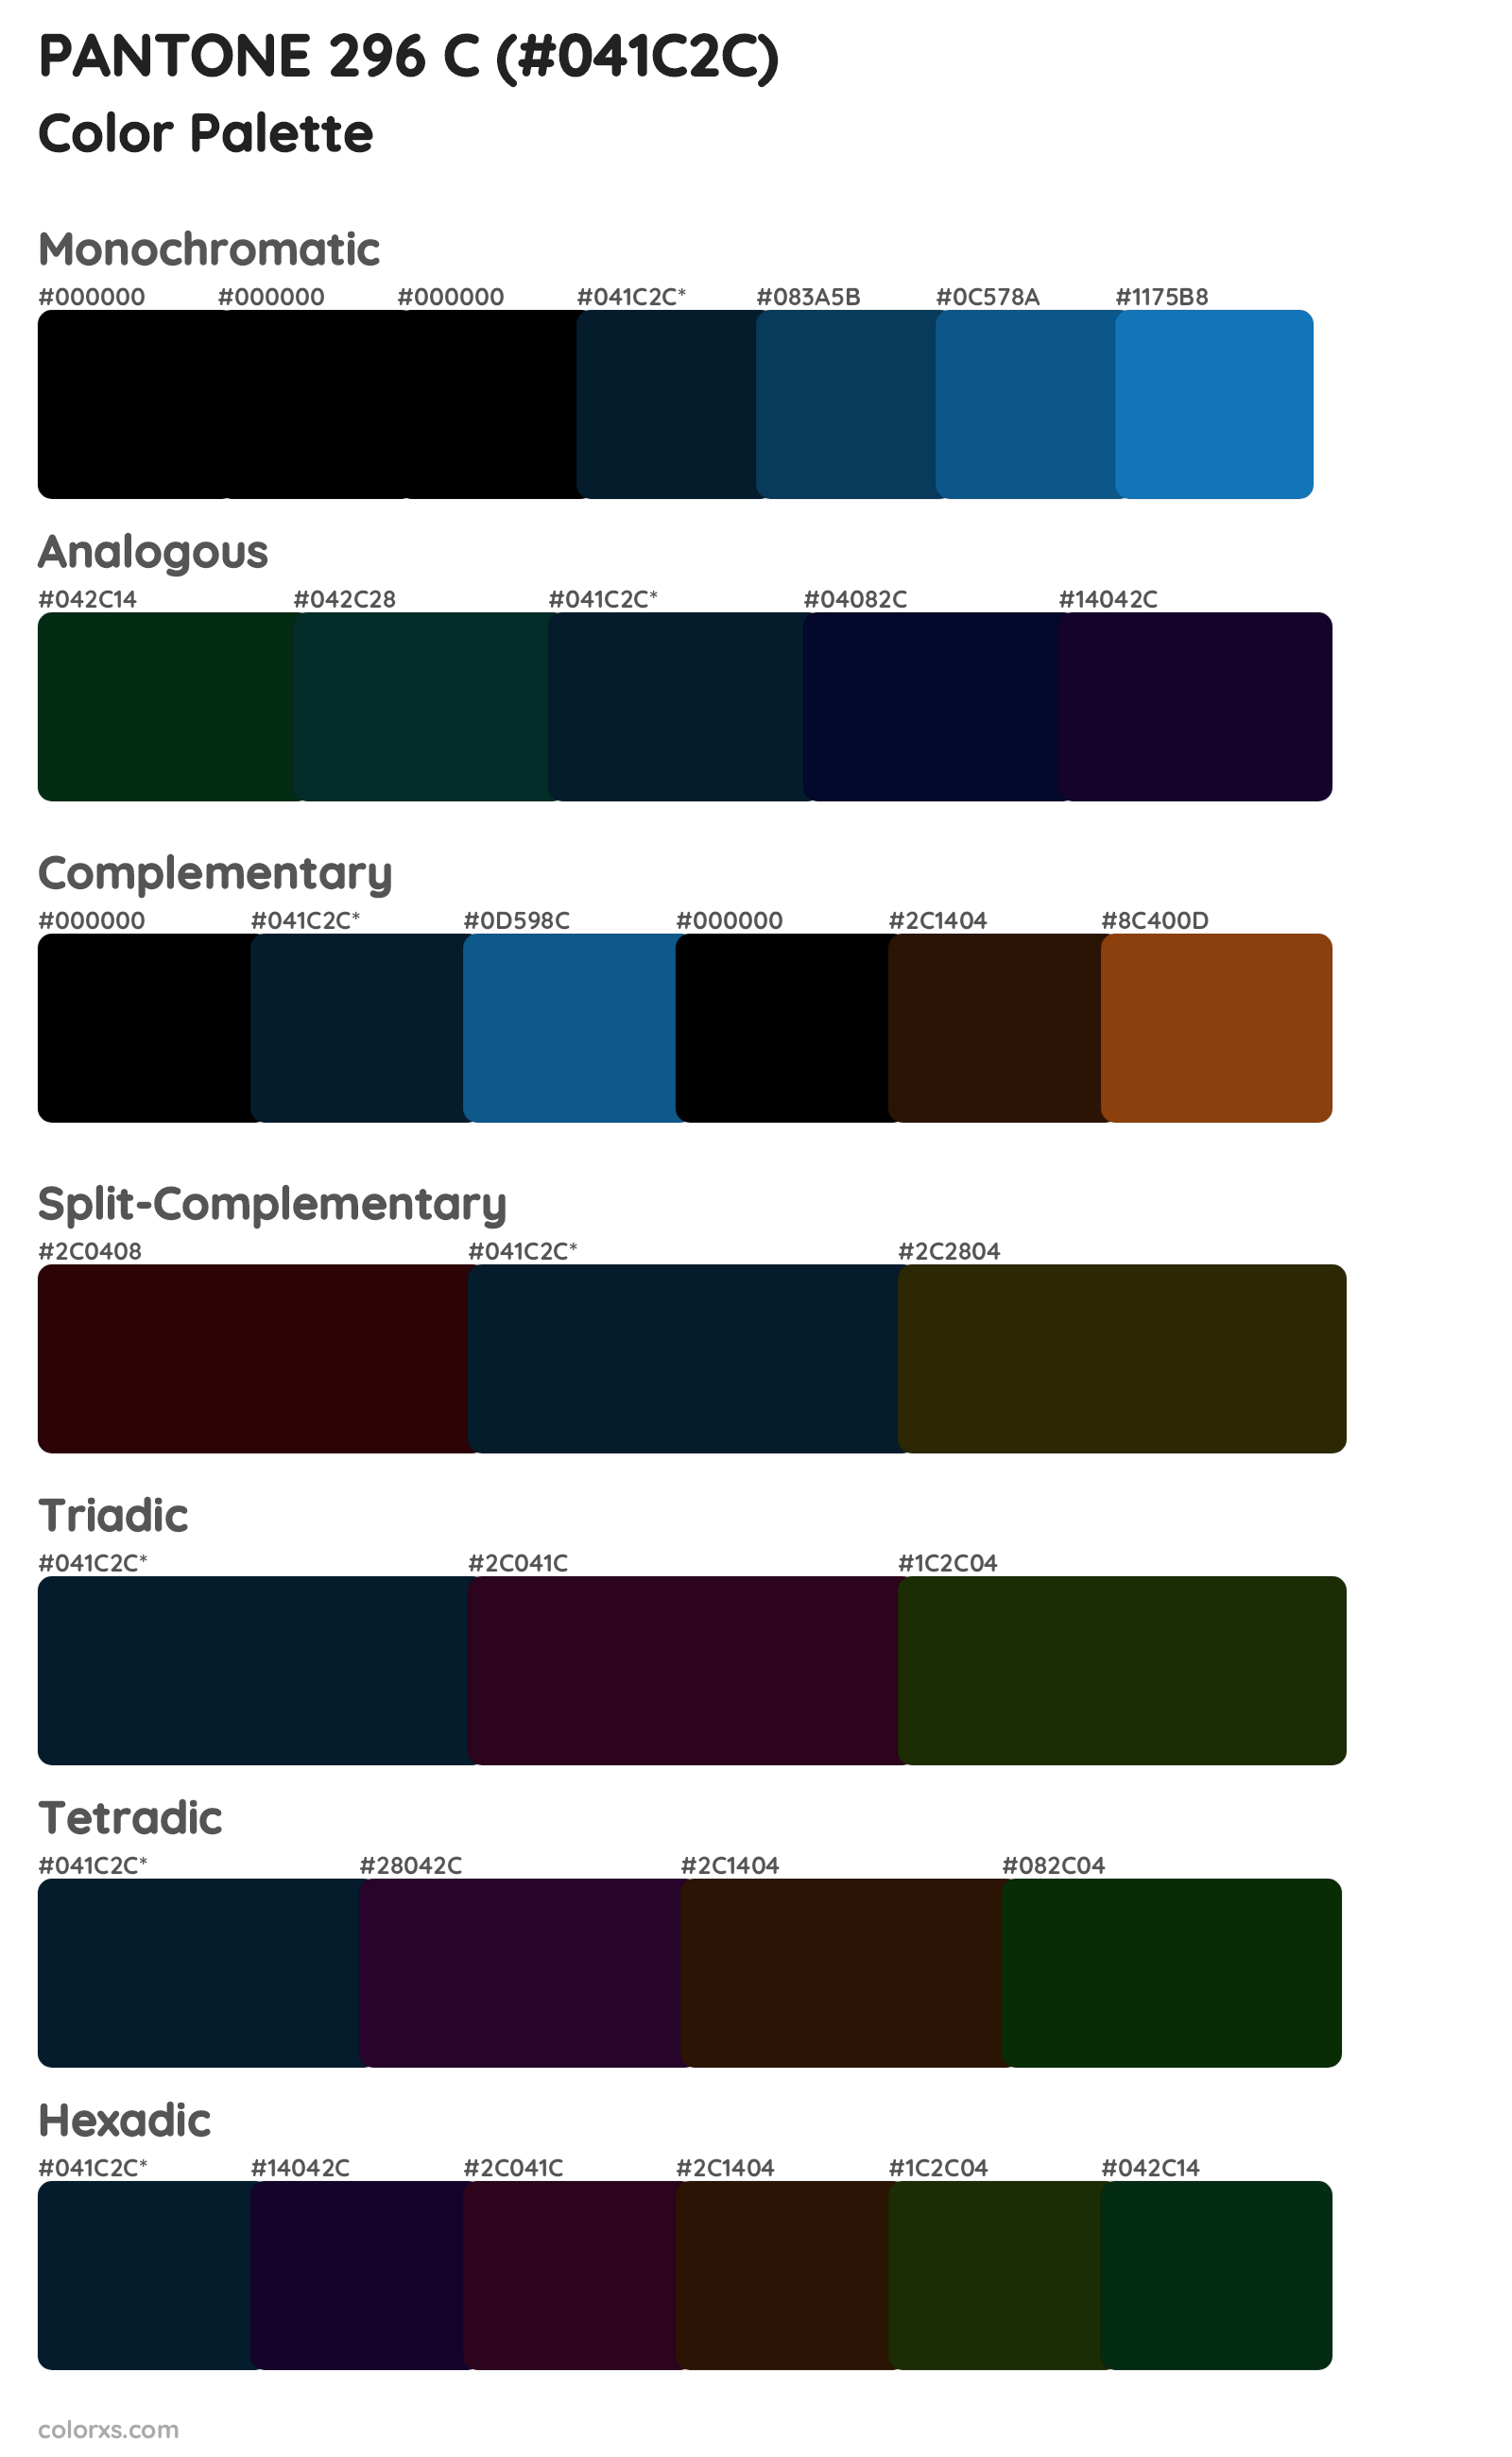 PANTONE 296 C Color Scheme Palettes